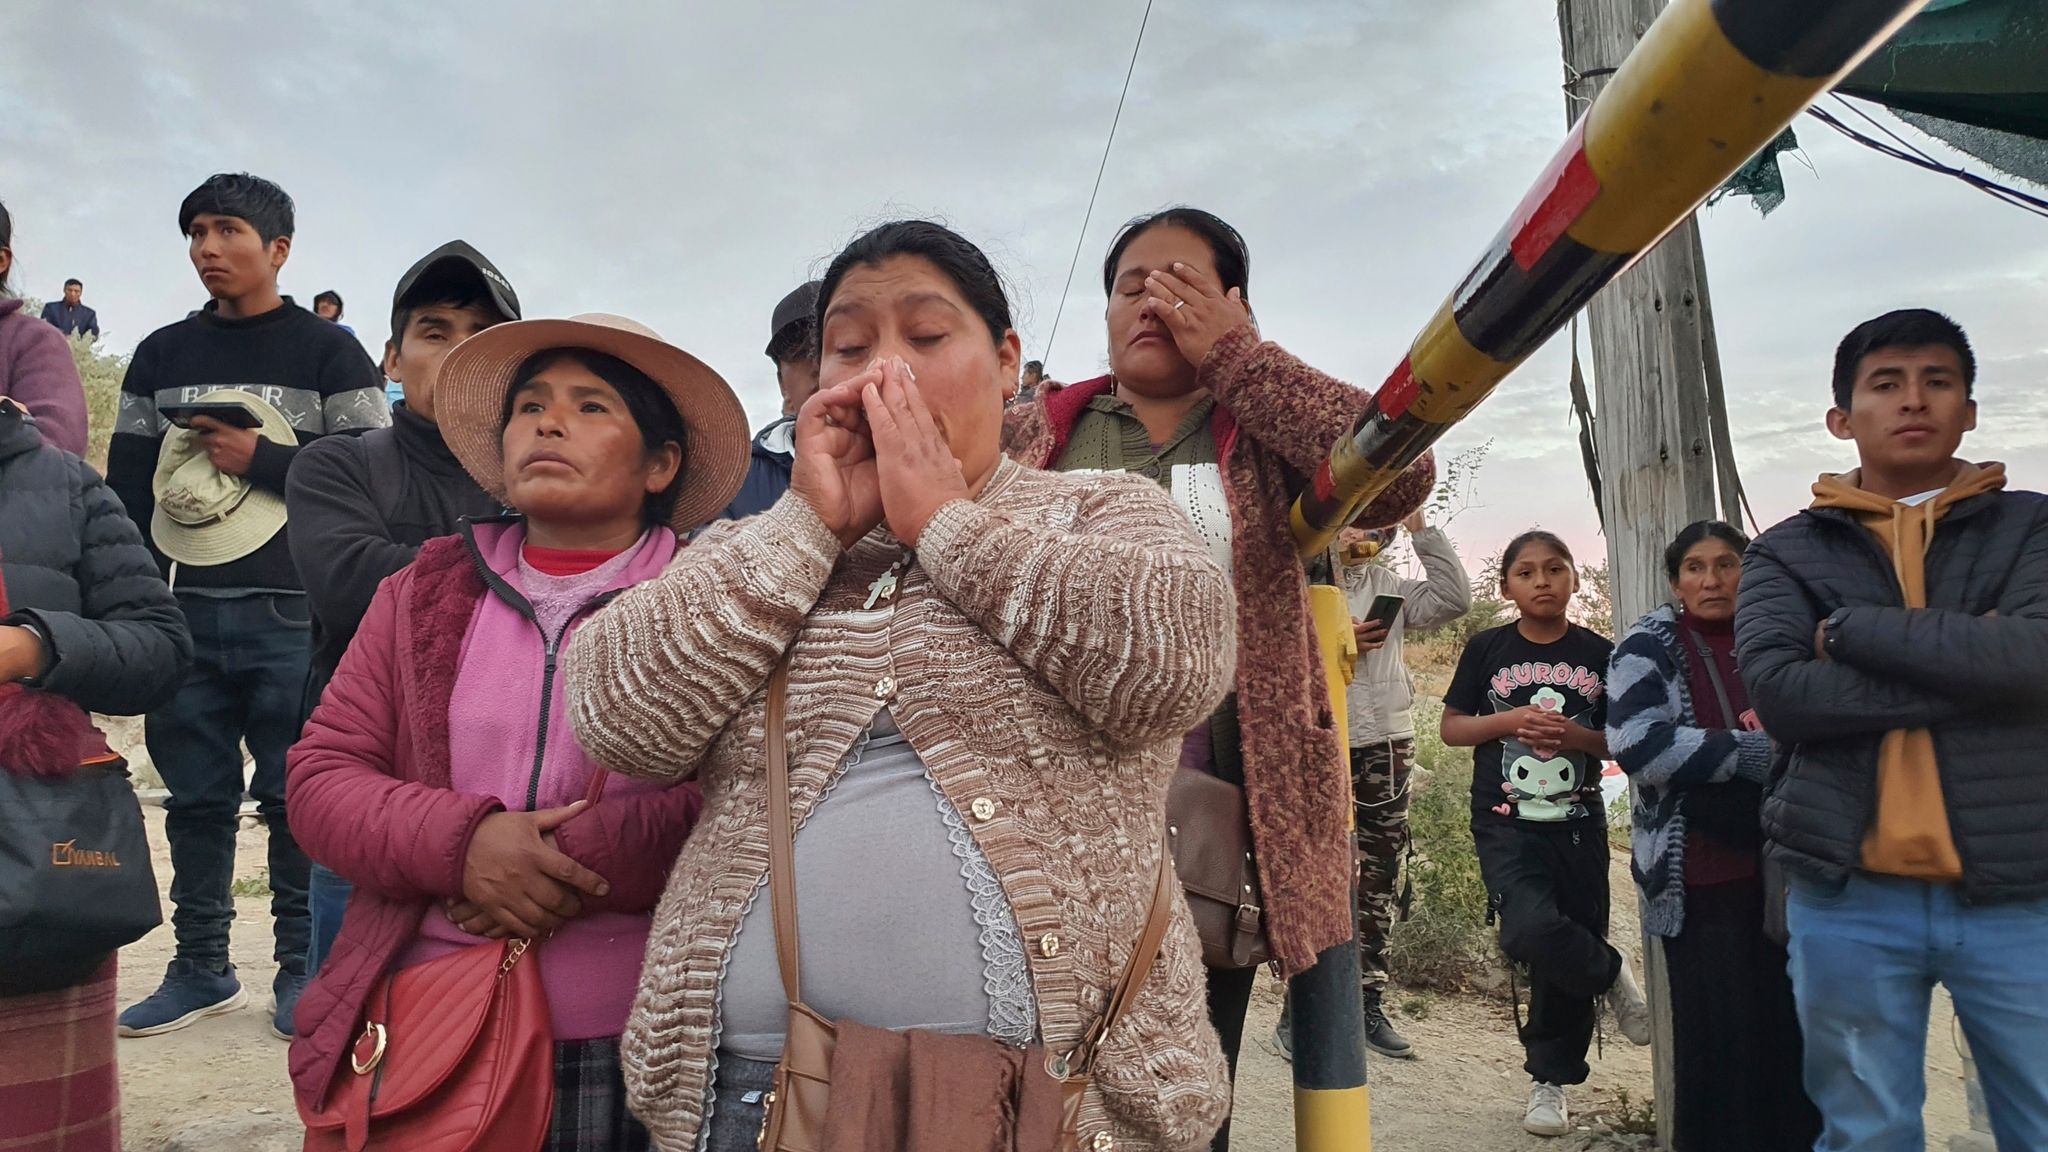 27 Tote nach Bergwerksbrand in Peru